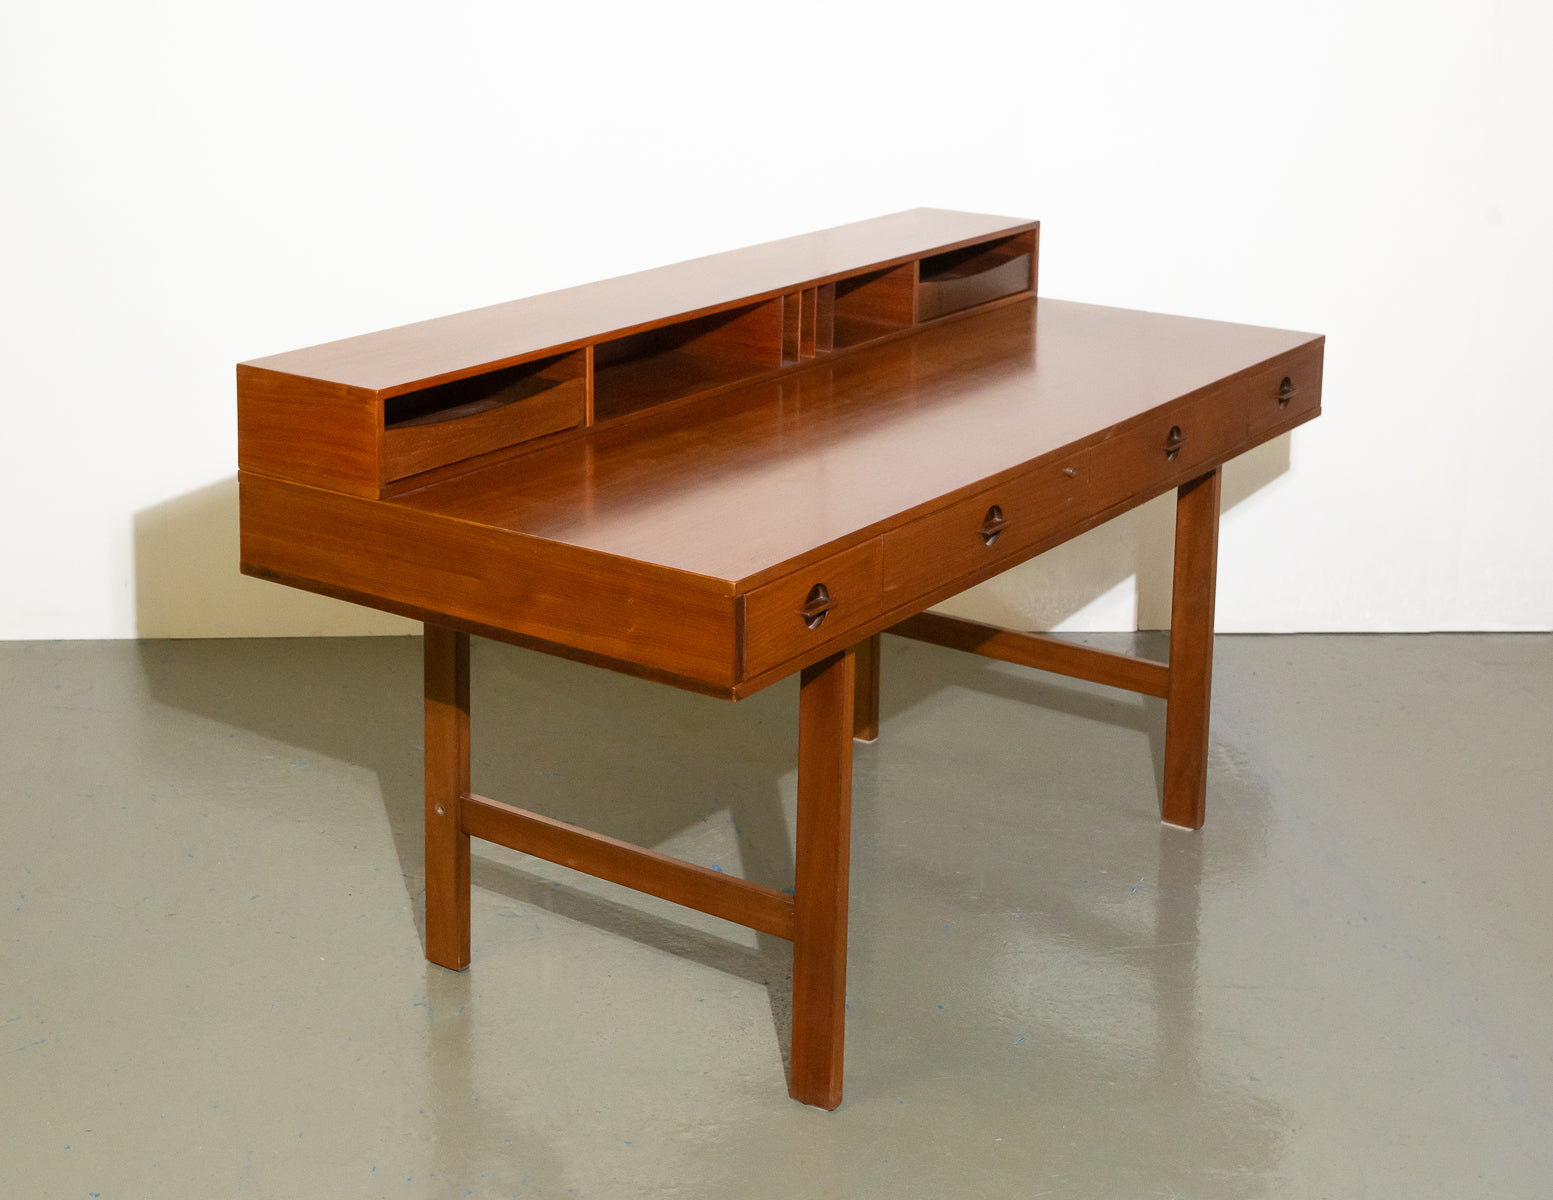 Partner Wooden Desk